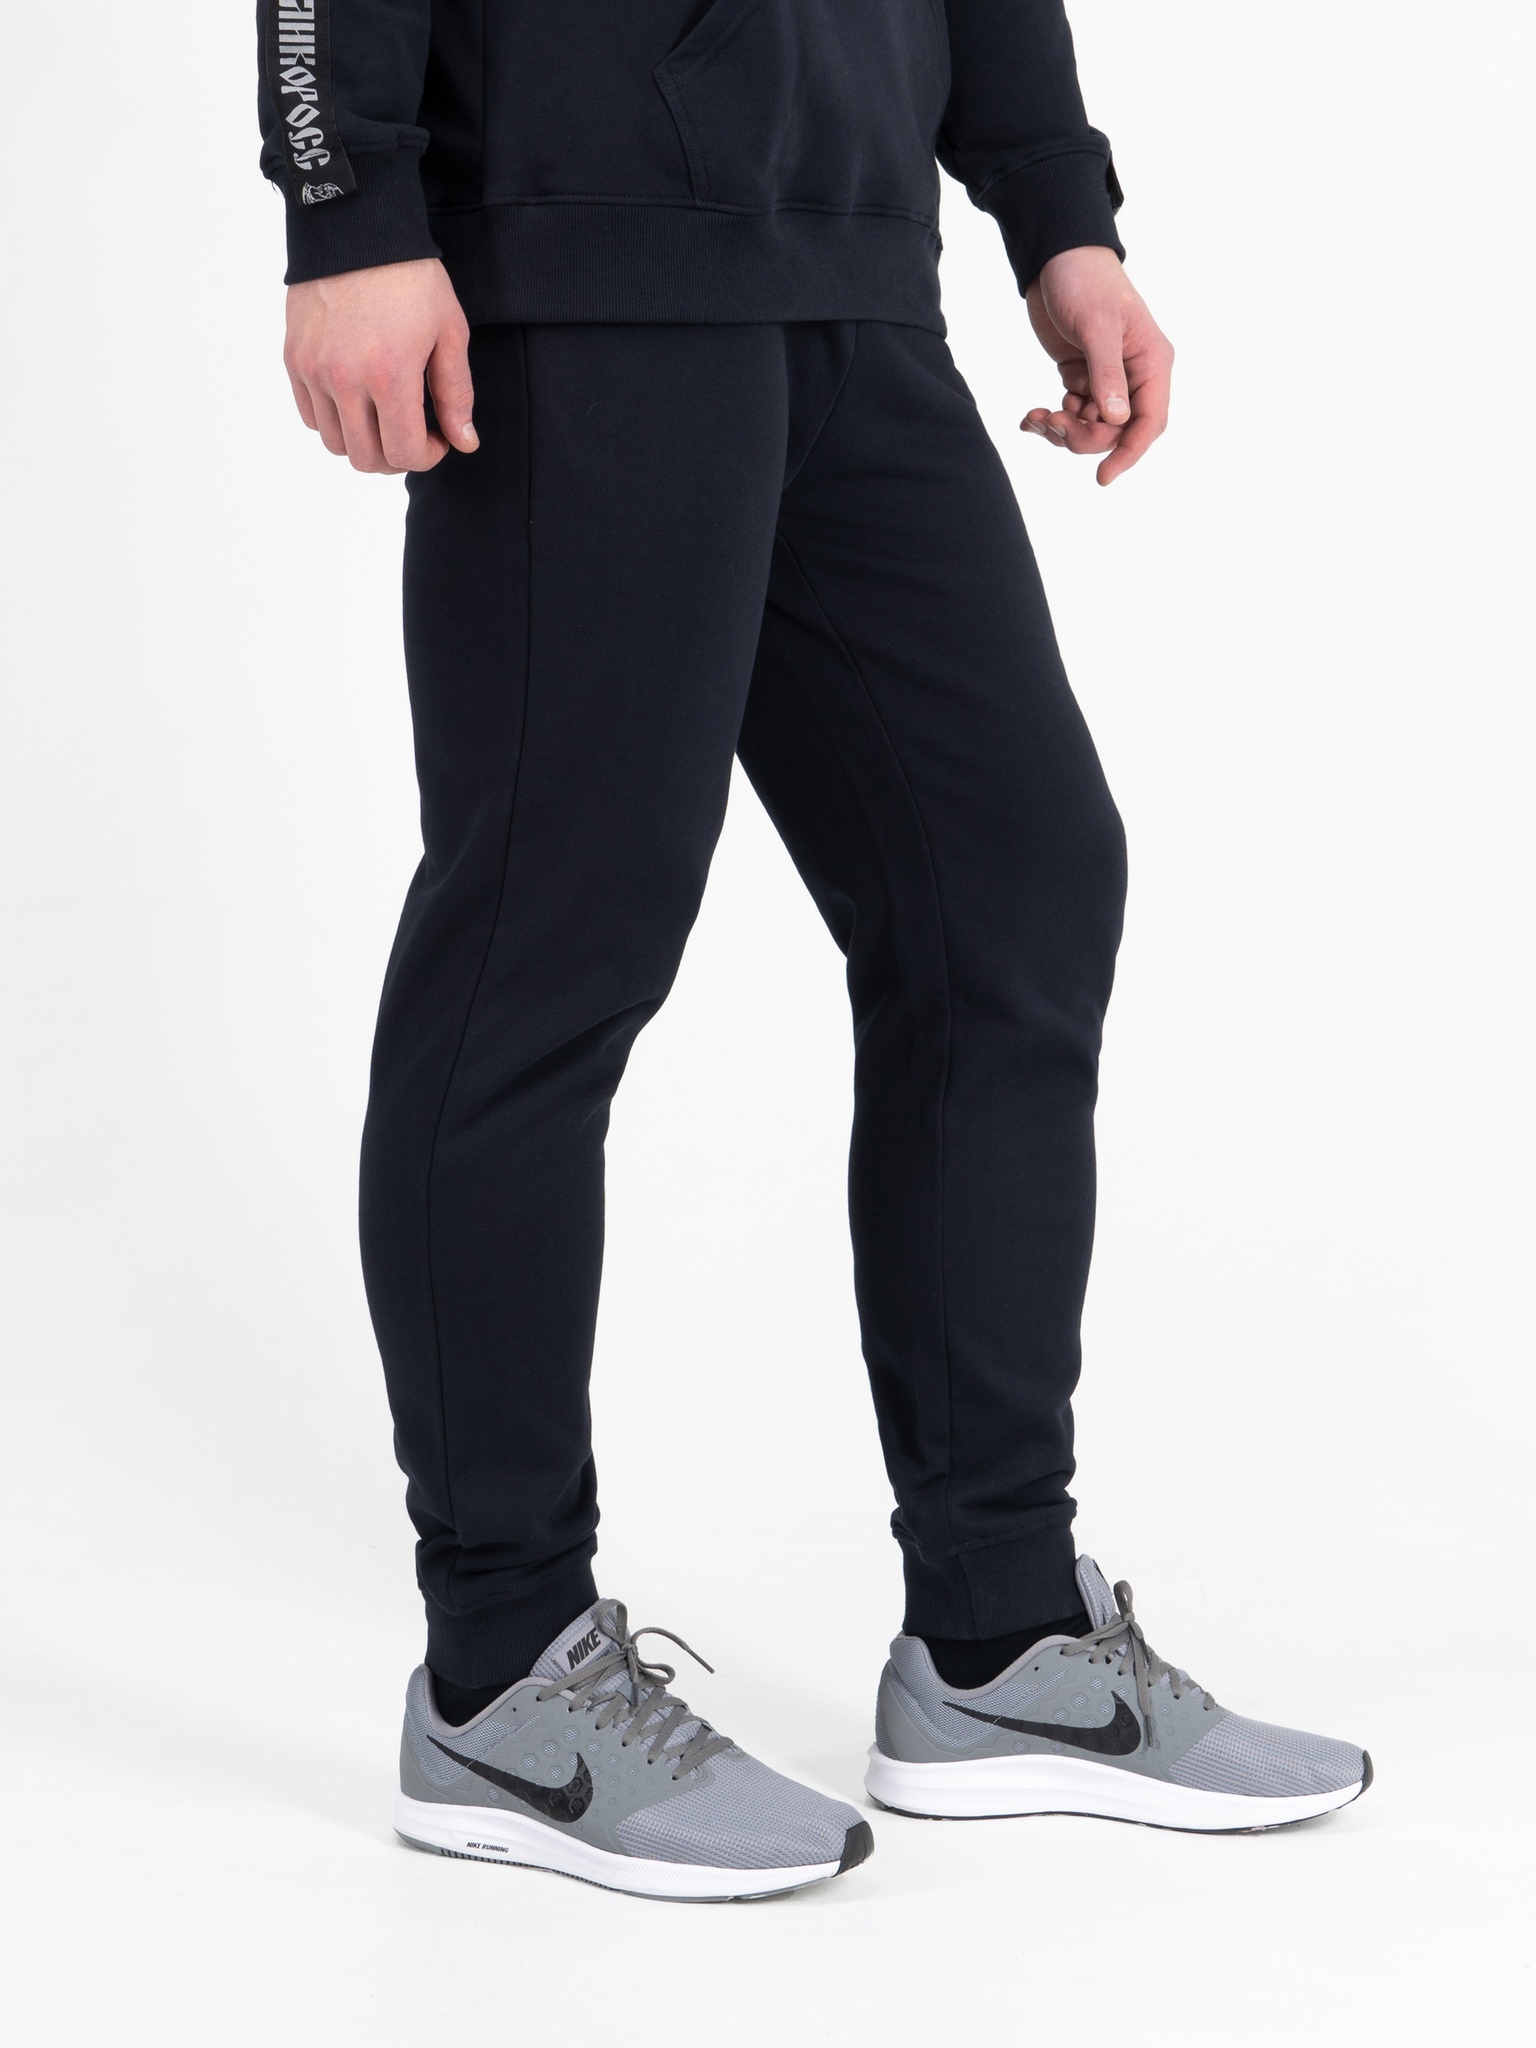 фото Спортивные брюки мужские великоросс bm синие 46 ru